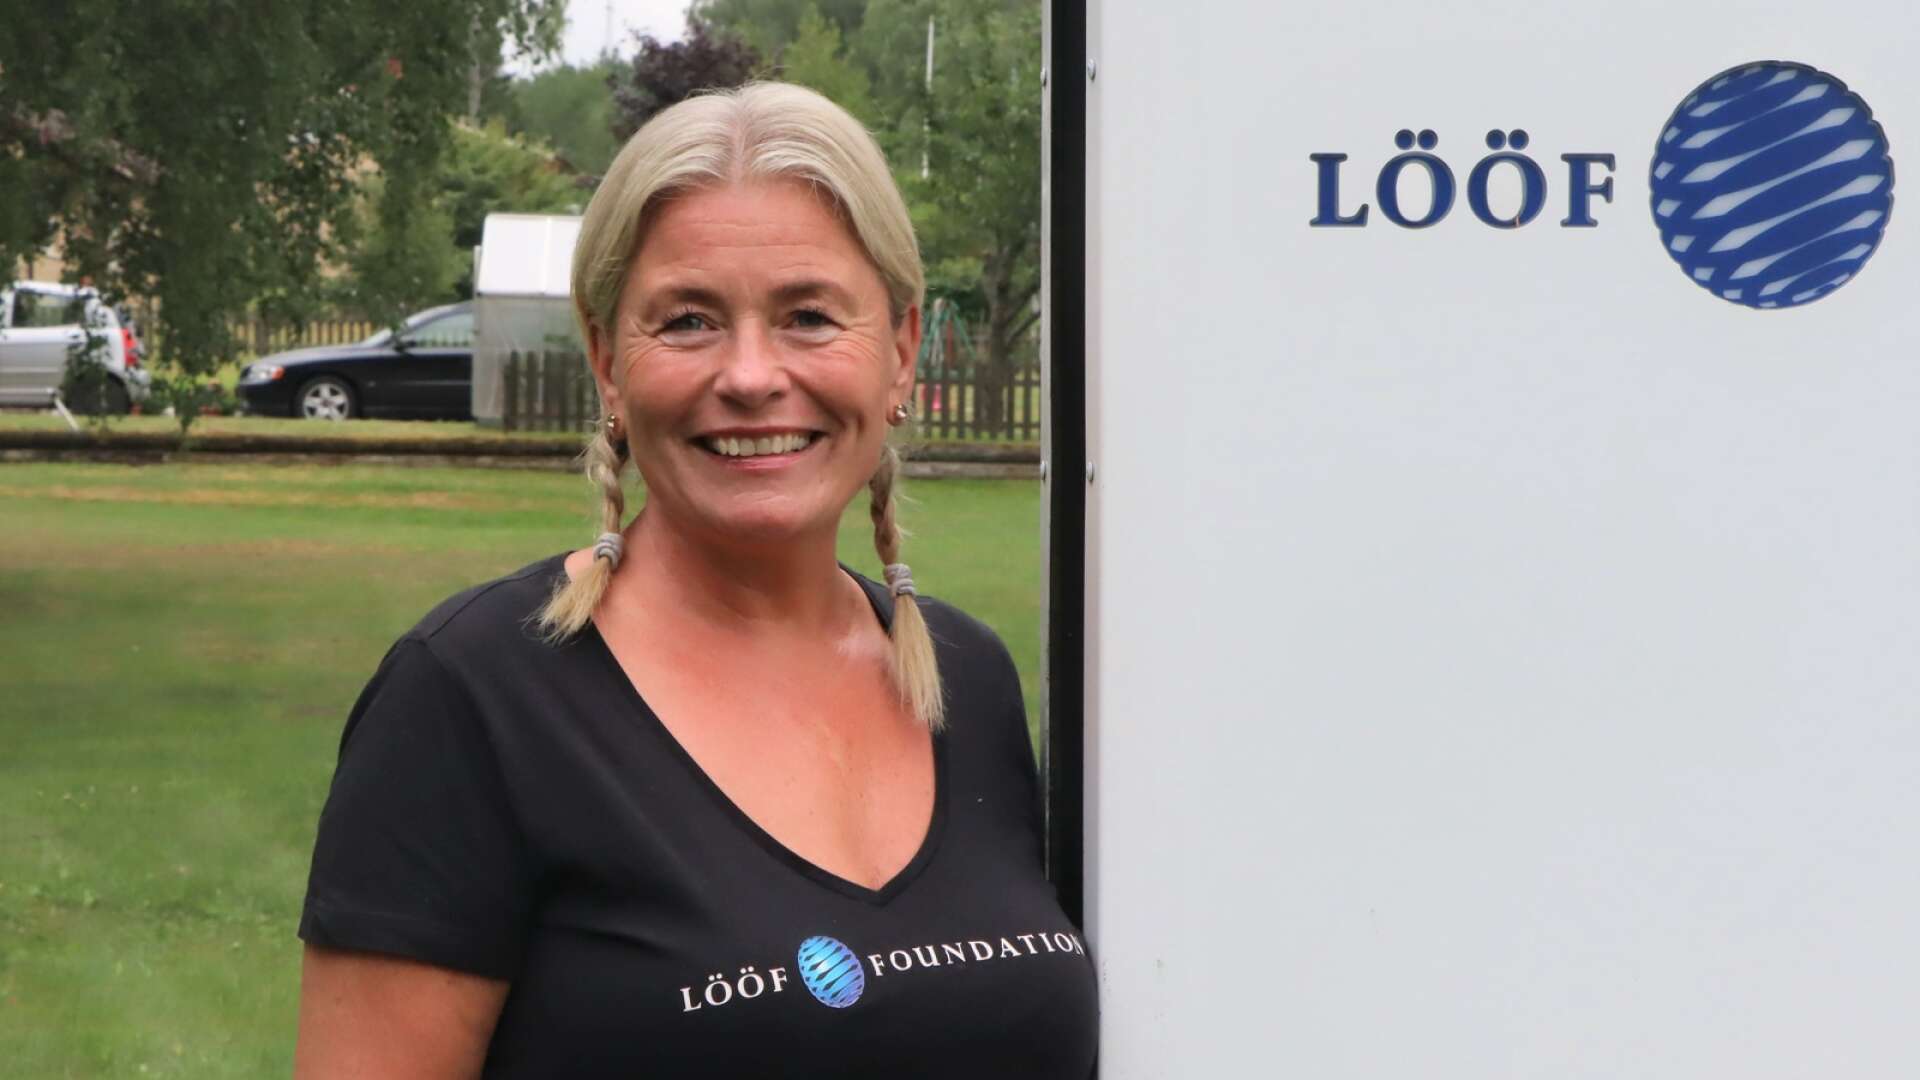 ”Resurserna till stiftelsen kommer med hjärtat ifrån Gullspång, säger Sophie Lööf, ägare av Partex och grundare av välgörenhetsstifelsen Lööf Foundation.